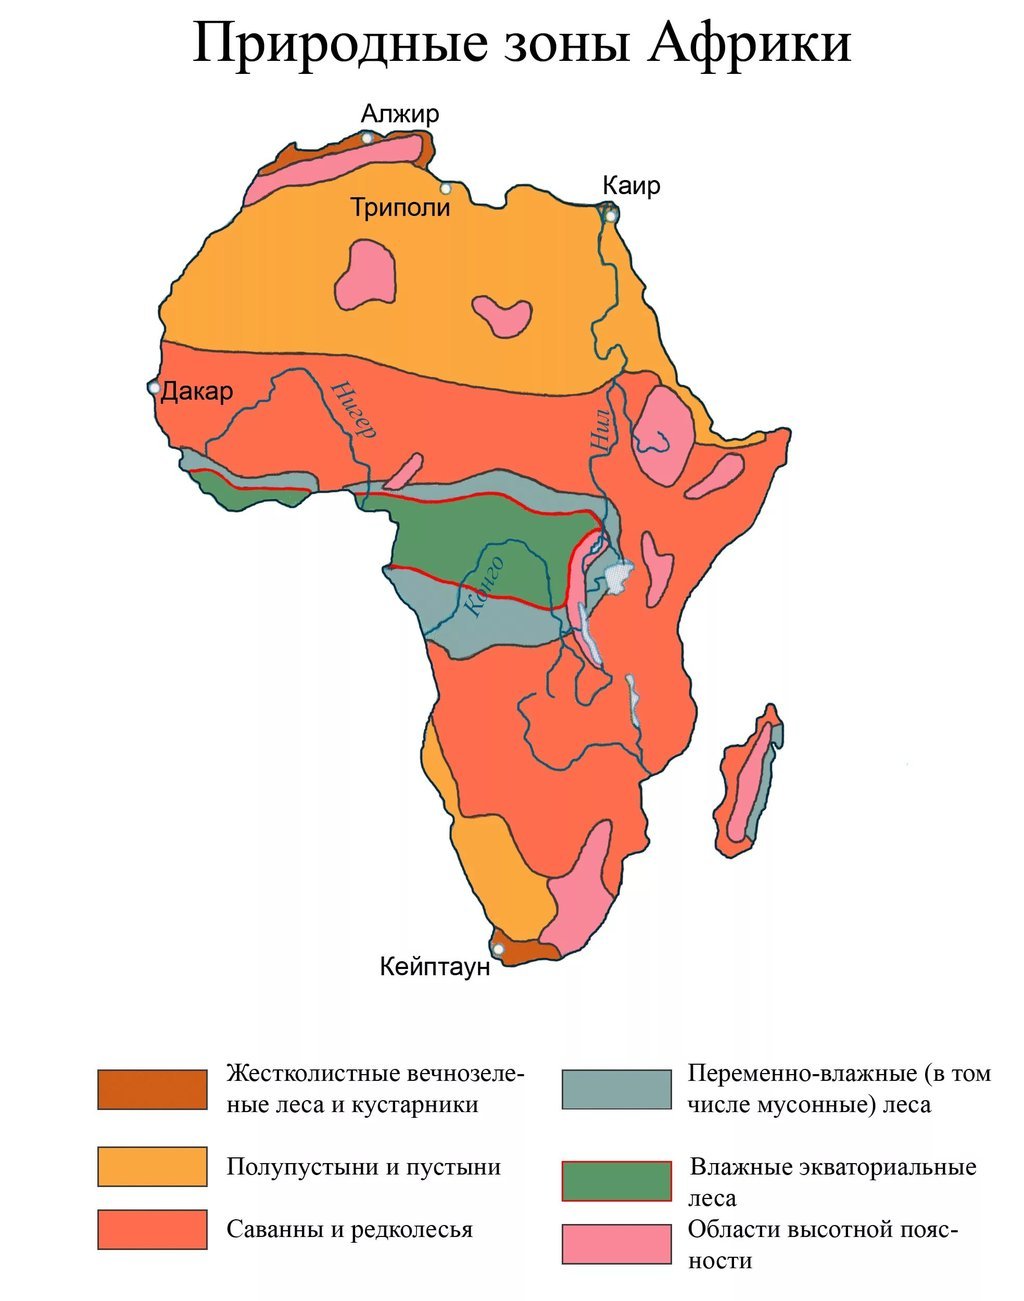 Крупные природные зоны африки. Карта природных зон Африки. Карта климатических зон Африки. Природная зона тропического пояса Африки. Зона саванн и редколесий в Африке на карте.